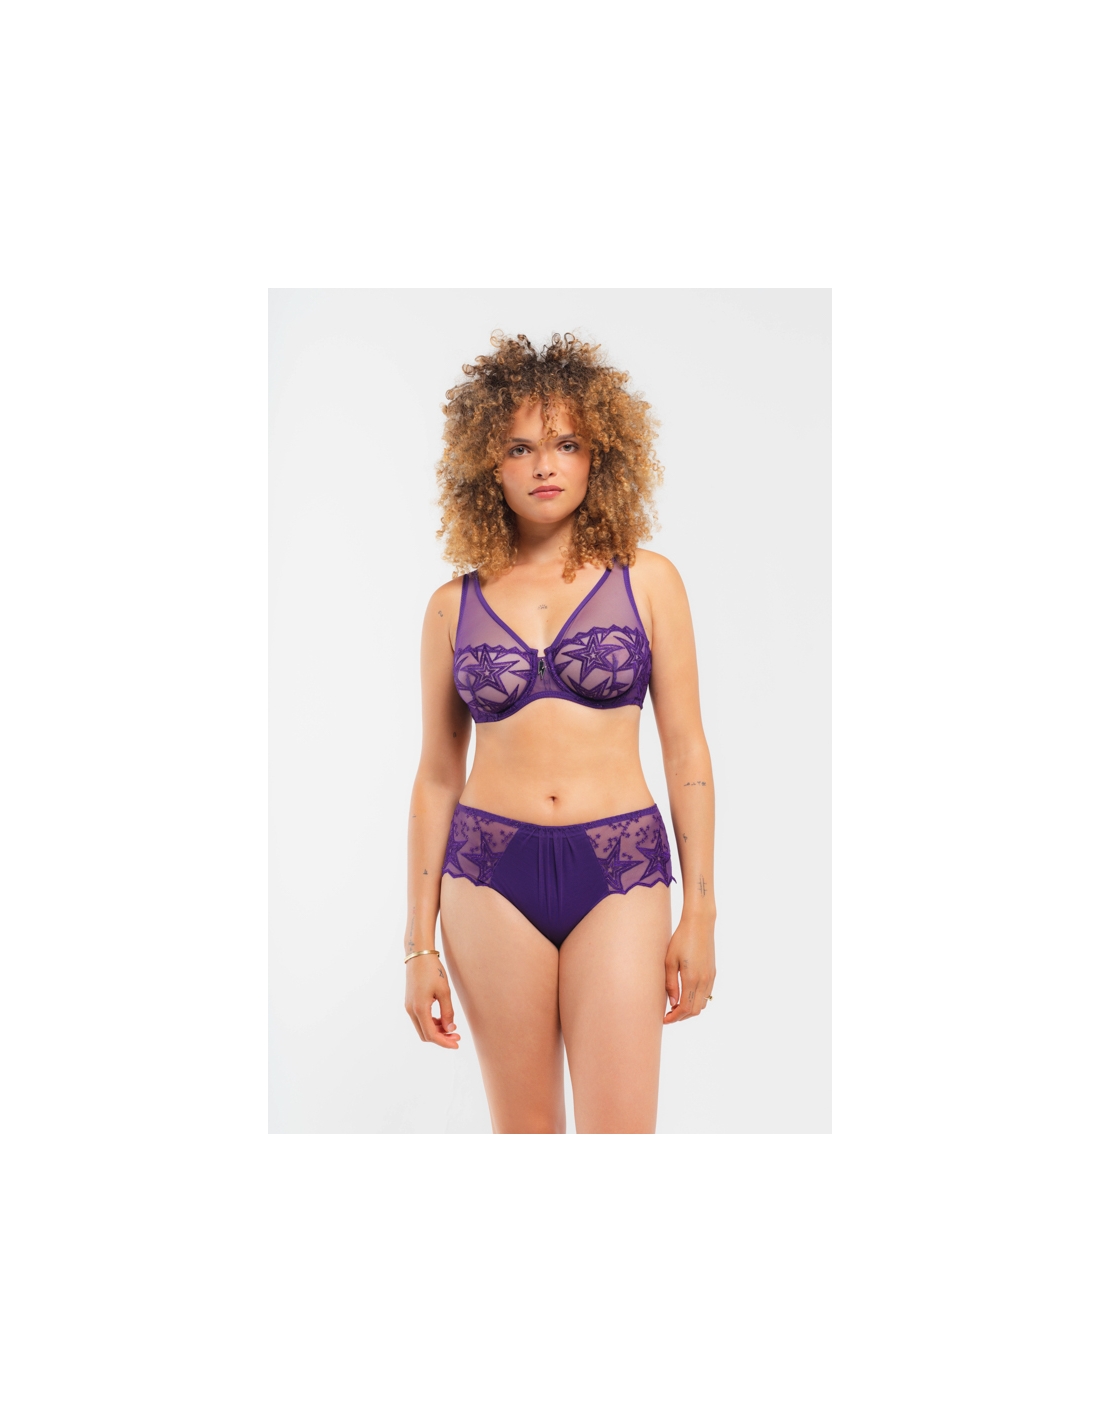 Soft bra Superstar Louisa Bracq couleur Noir Violette tailles 1 2 3 4  Louisa Bracq Superstar